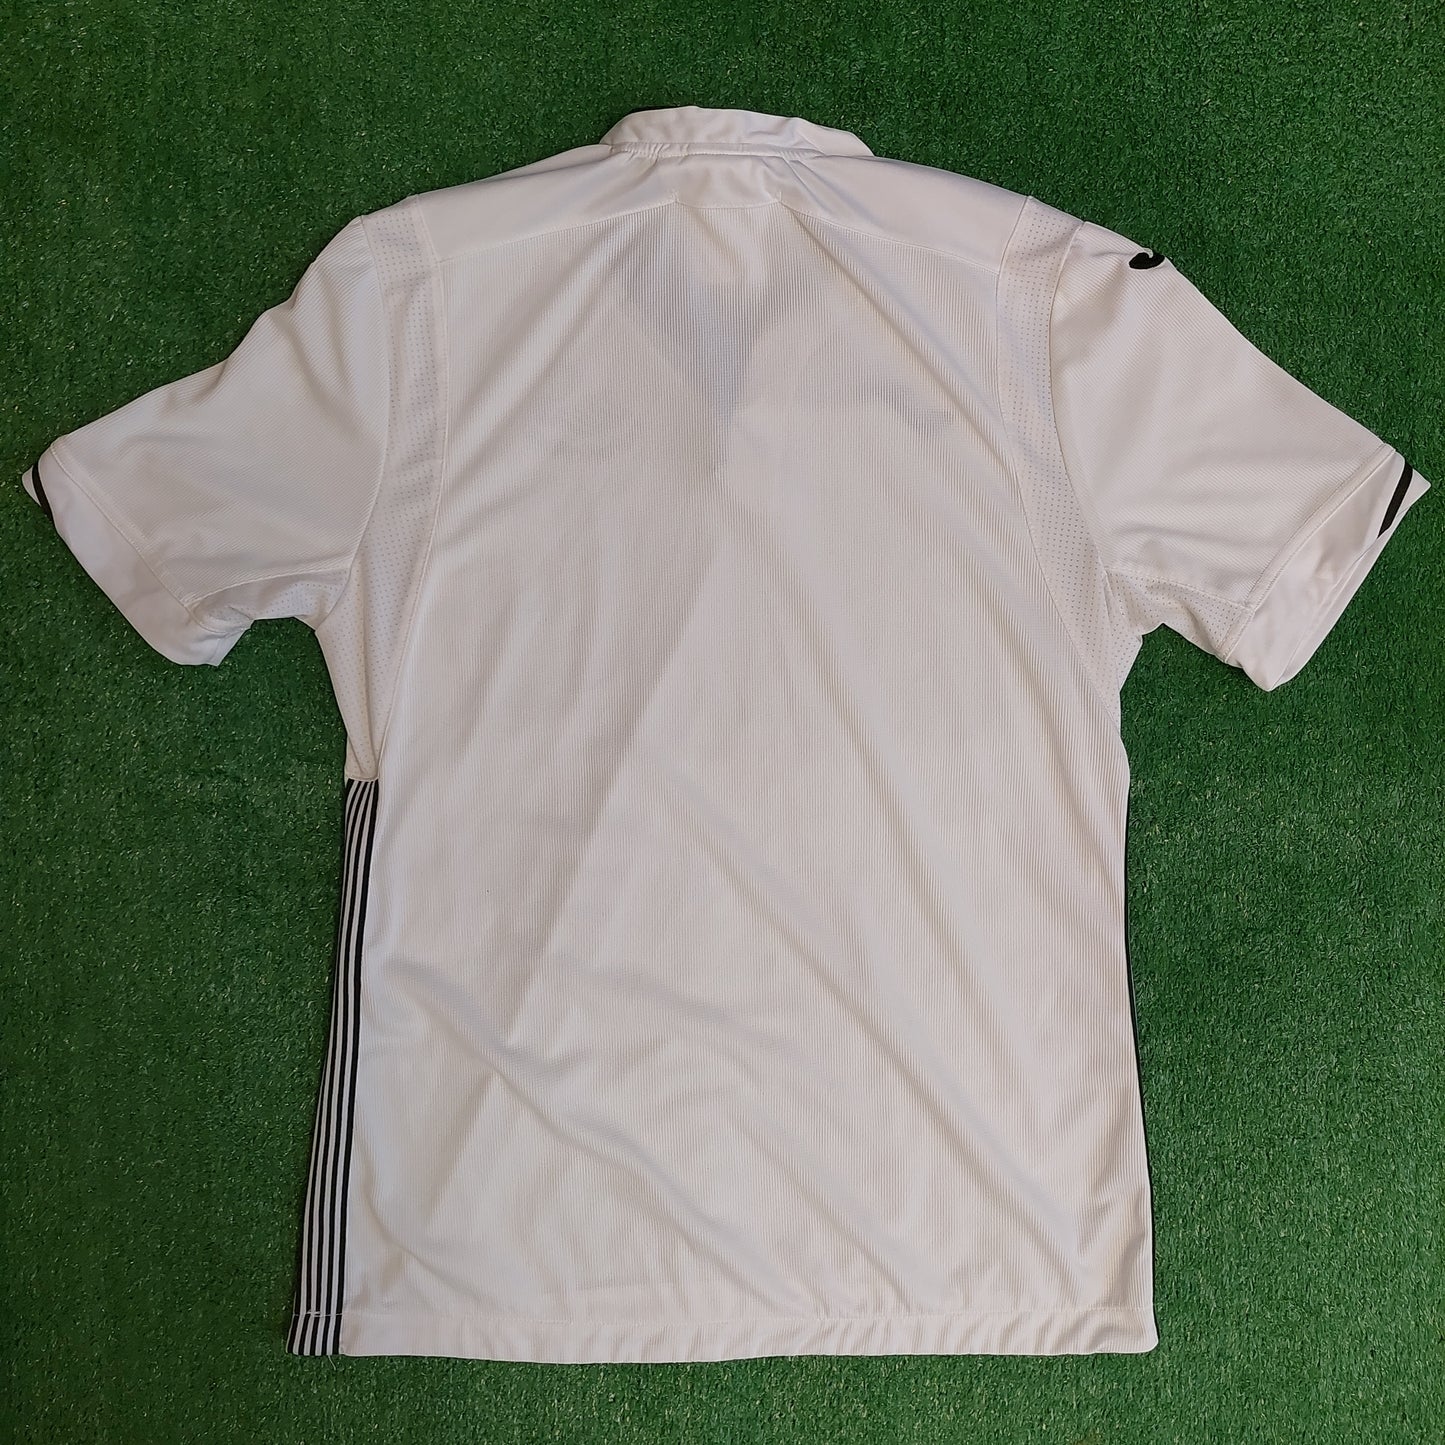 Swansea City 2018/19 Home Shirt (Excellent) - Size XL